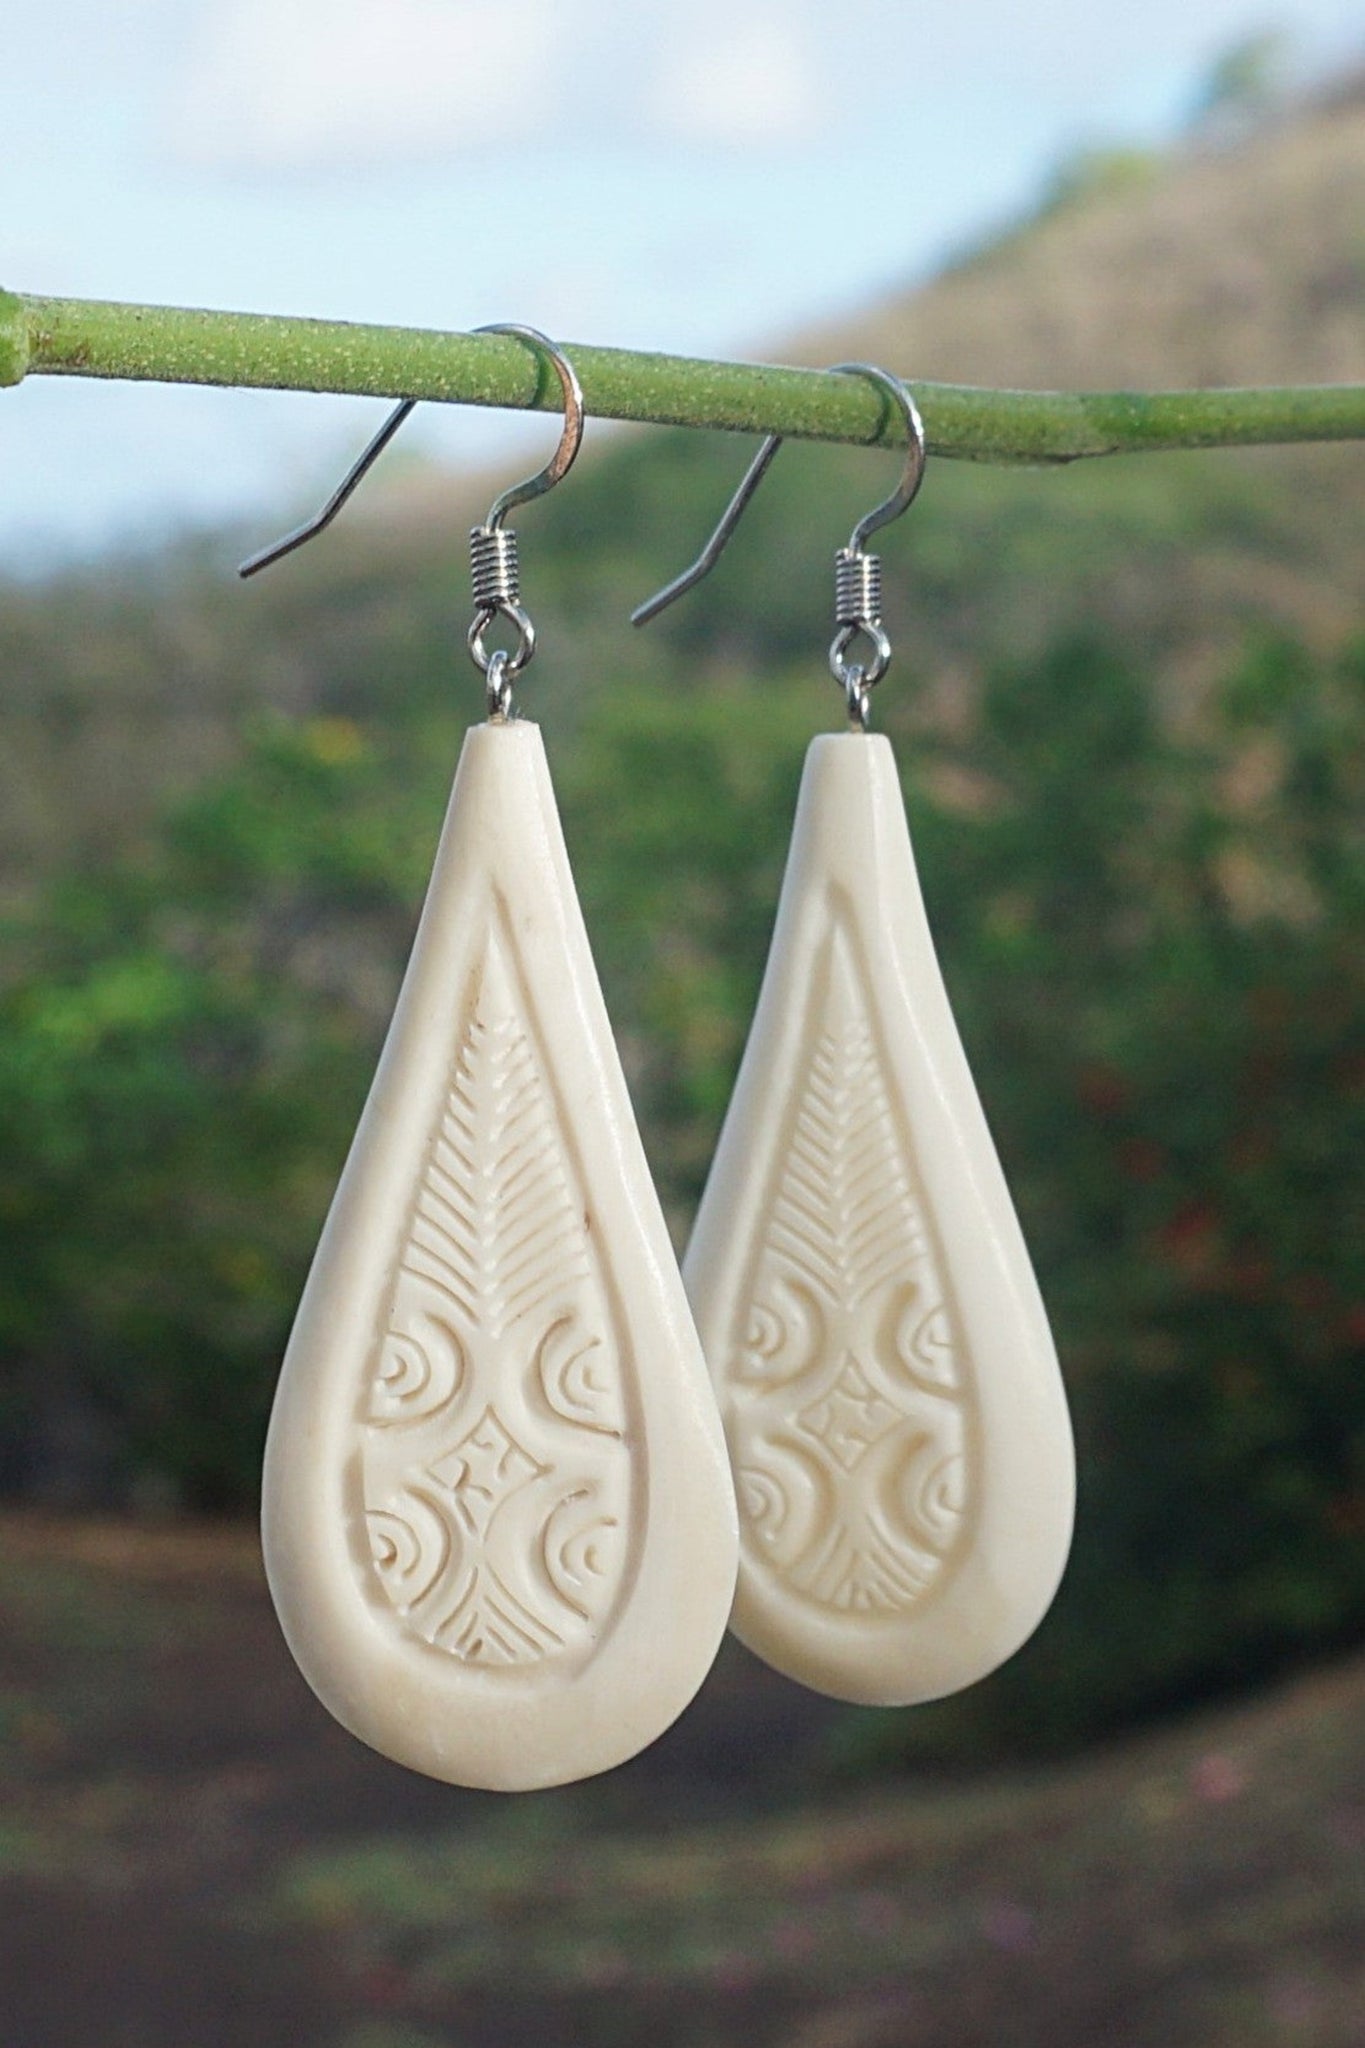 Nuku Hiva earrings